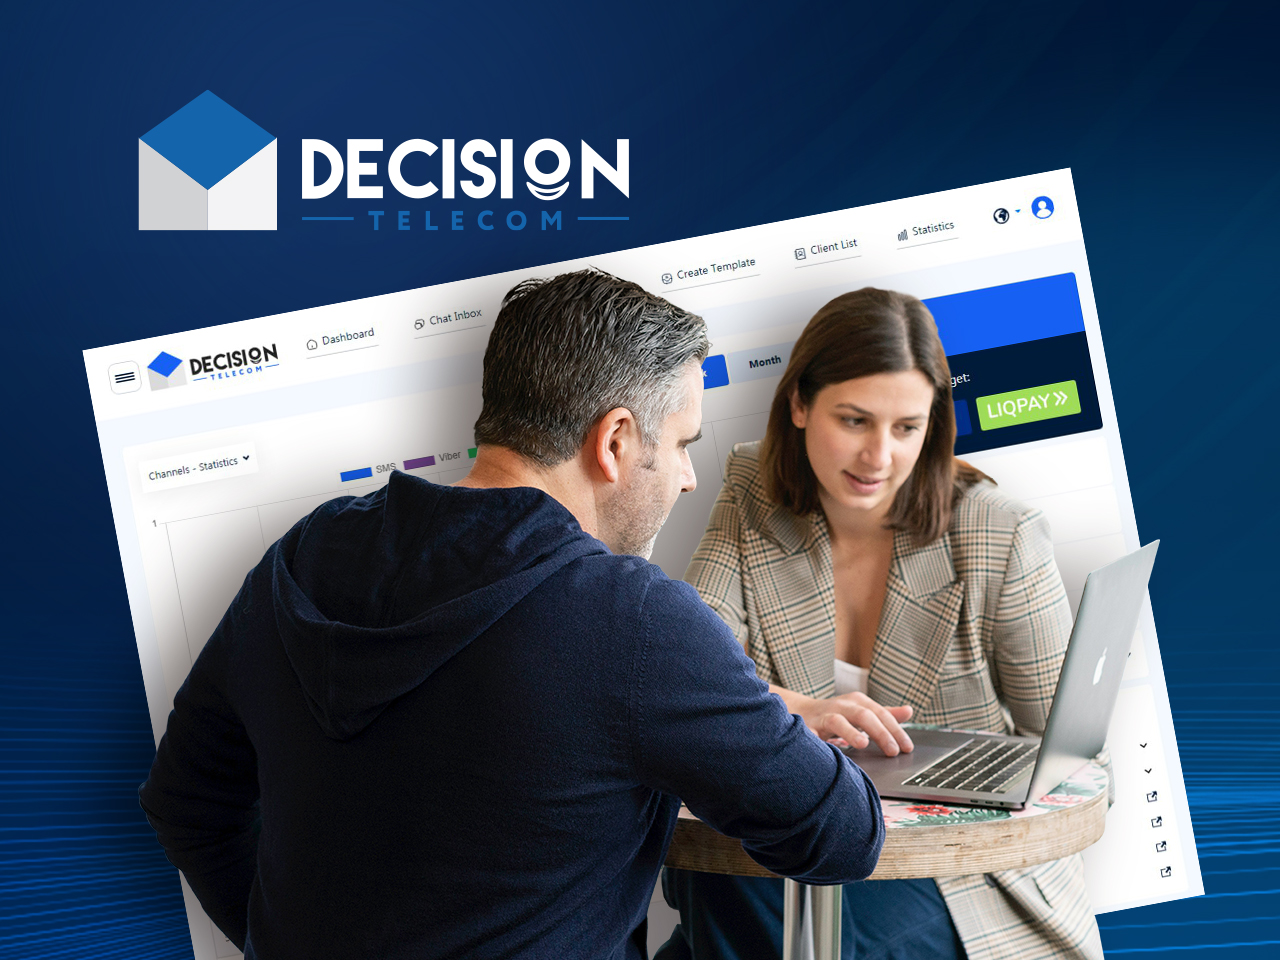 ¡Bienvenido al nuevo diseño web del panel de administración de Decision Telecom!